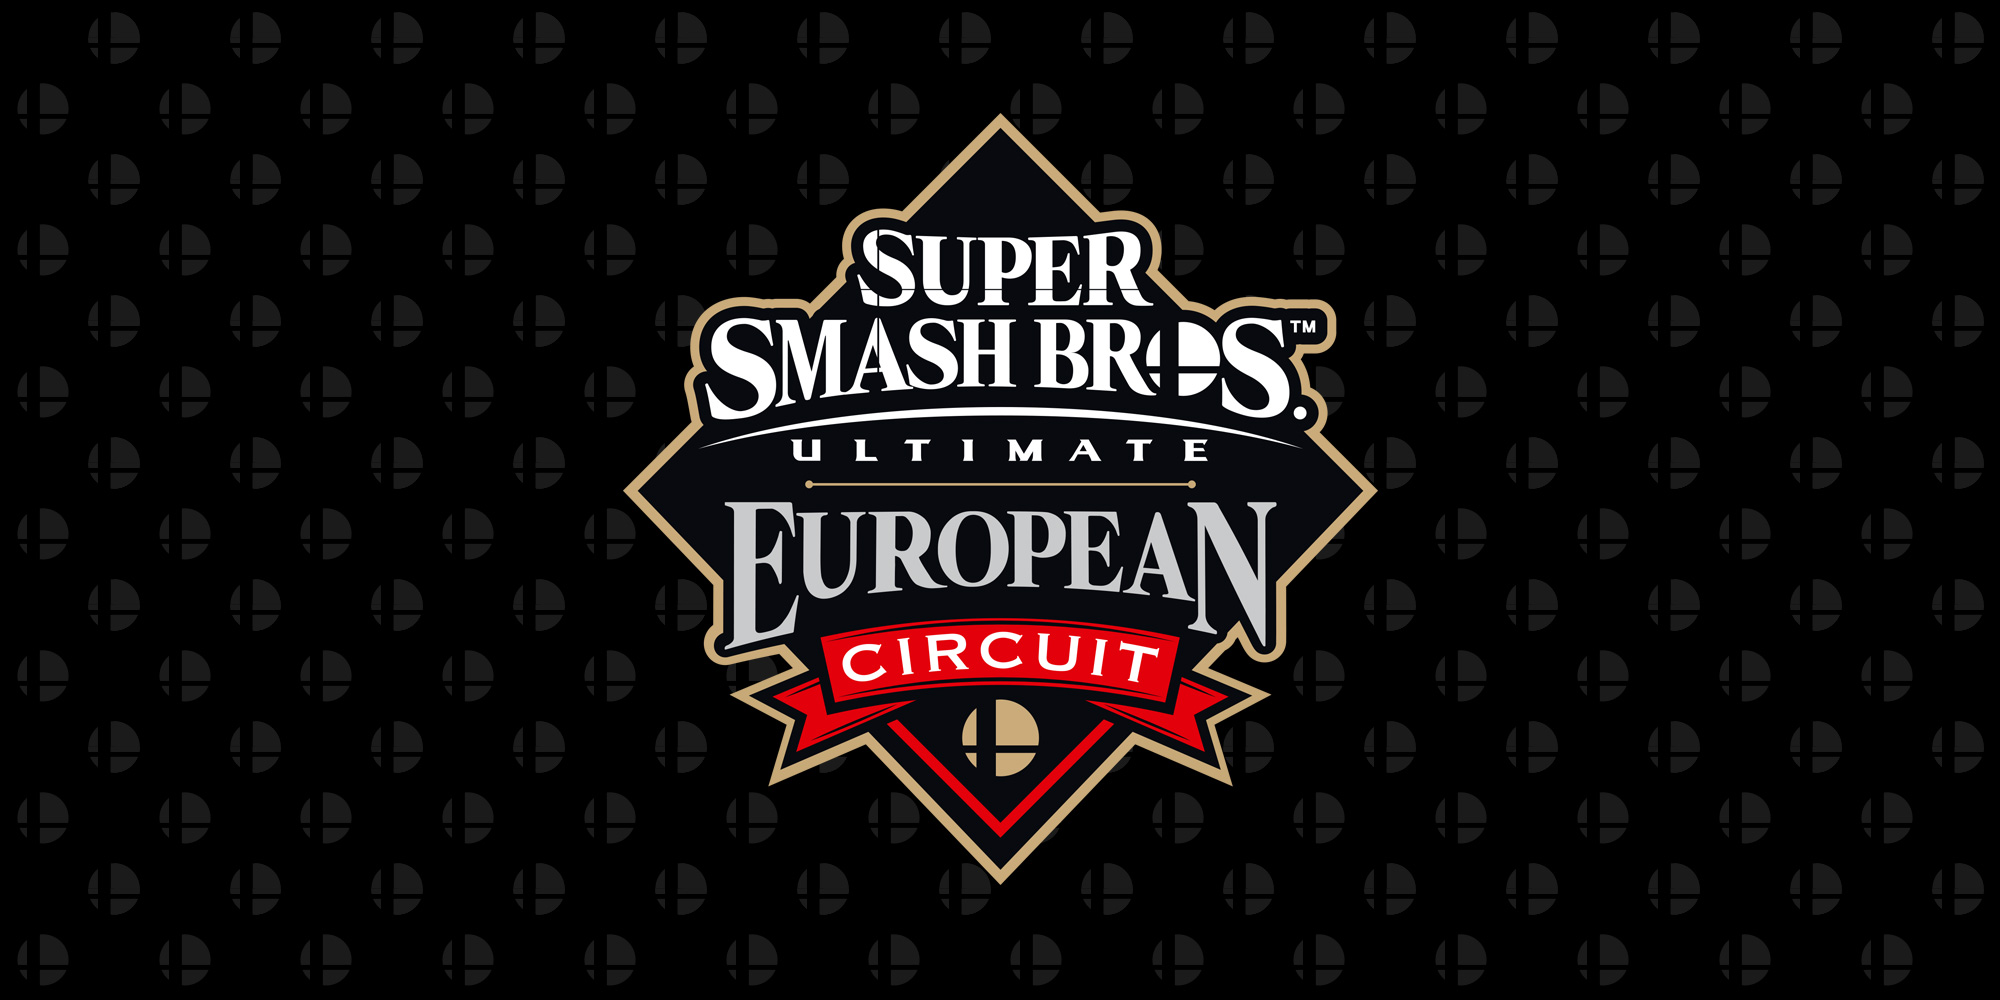 Qualificati per la finalissima del Super Smash Bros. Ultimate European Circuit, che si terrà il 12 e il 13 giugno al DreamHack Summer, tramite il Last Chance Qualifier!